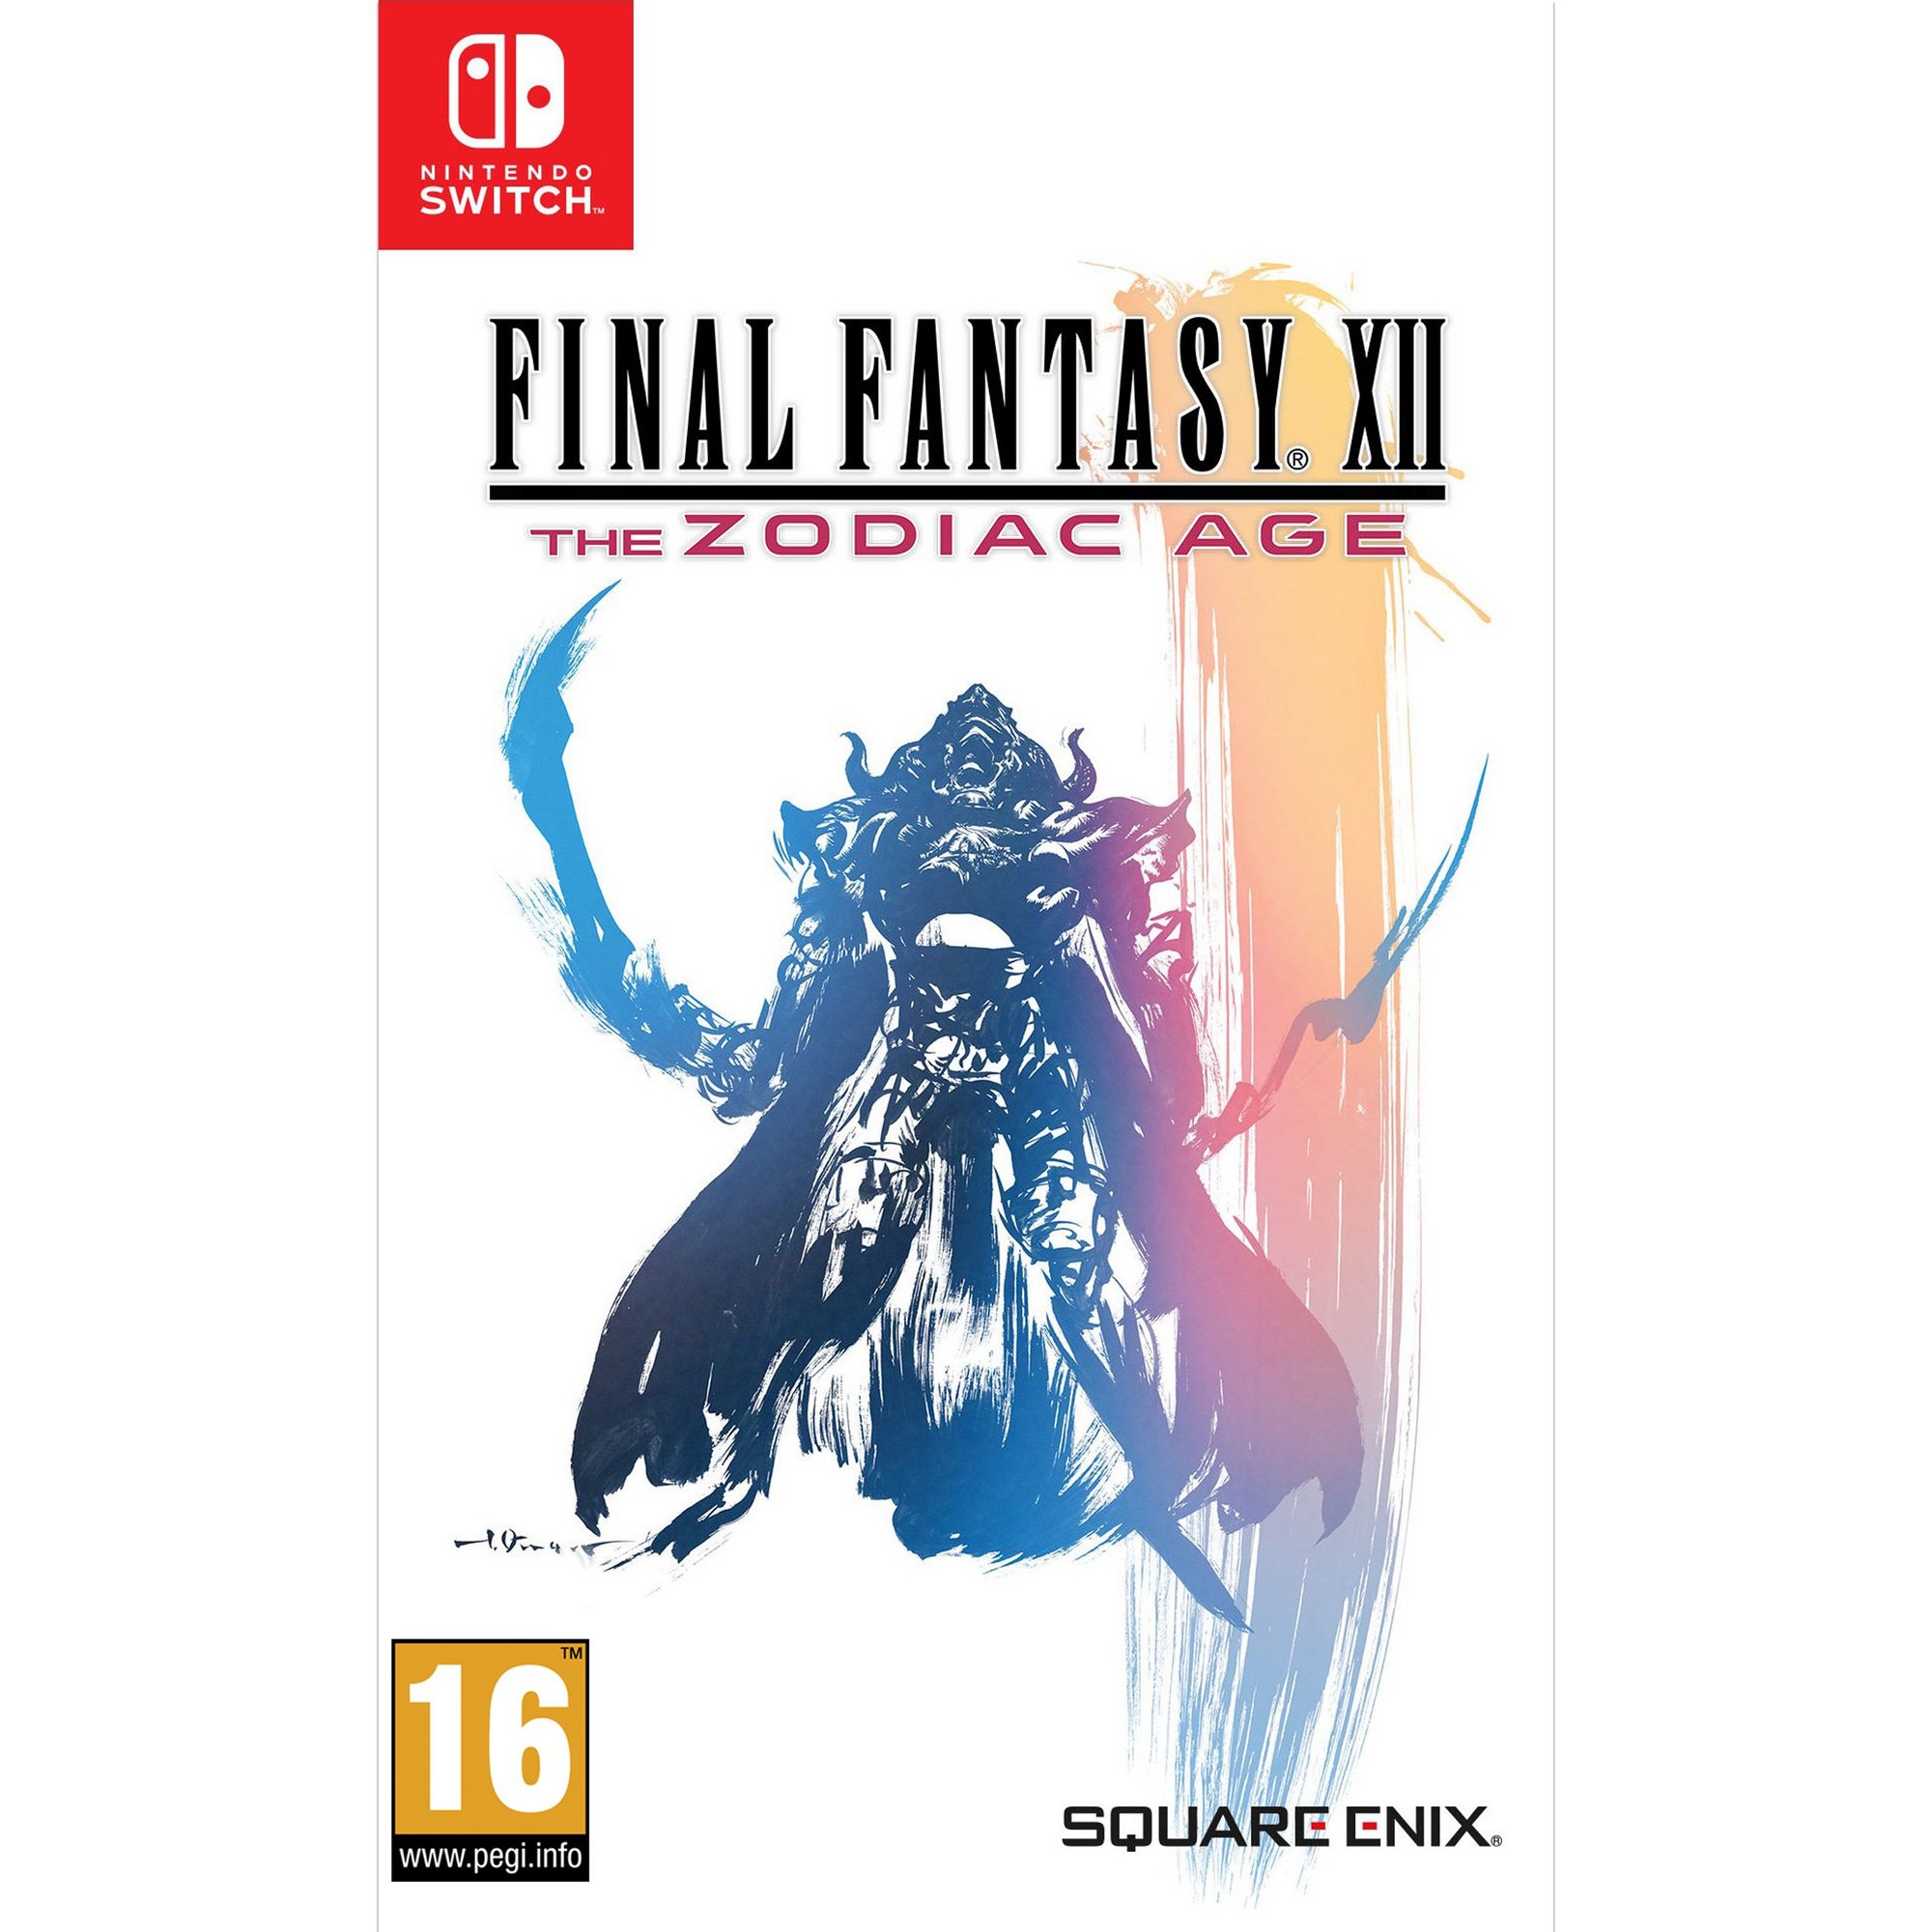 Nintendo Switch: Final Fantasy XII The Zodiac Age